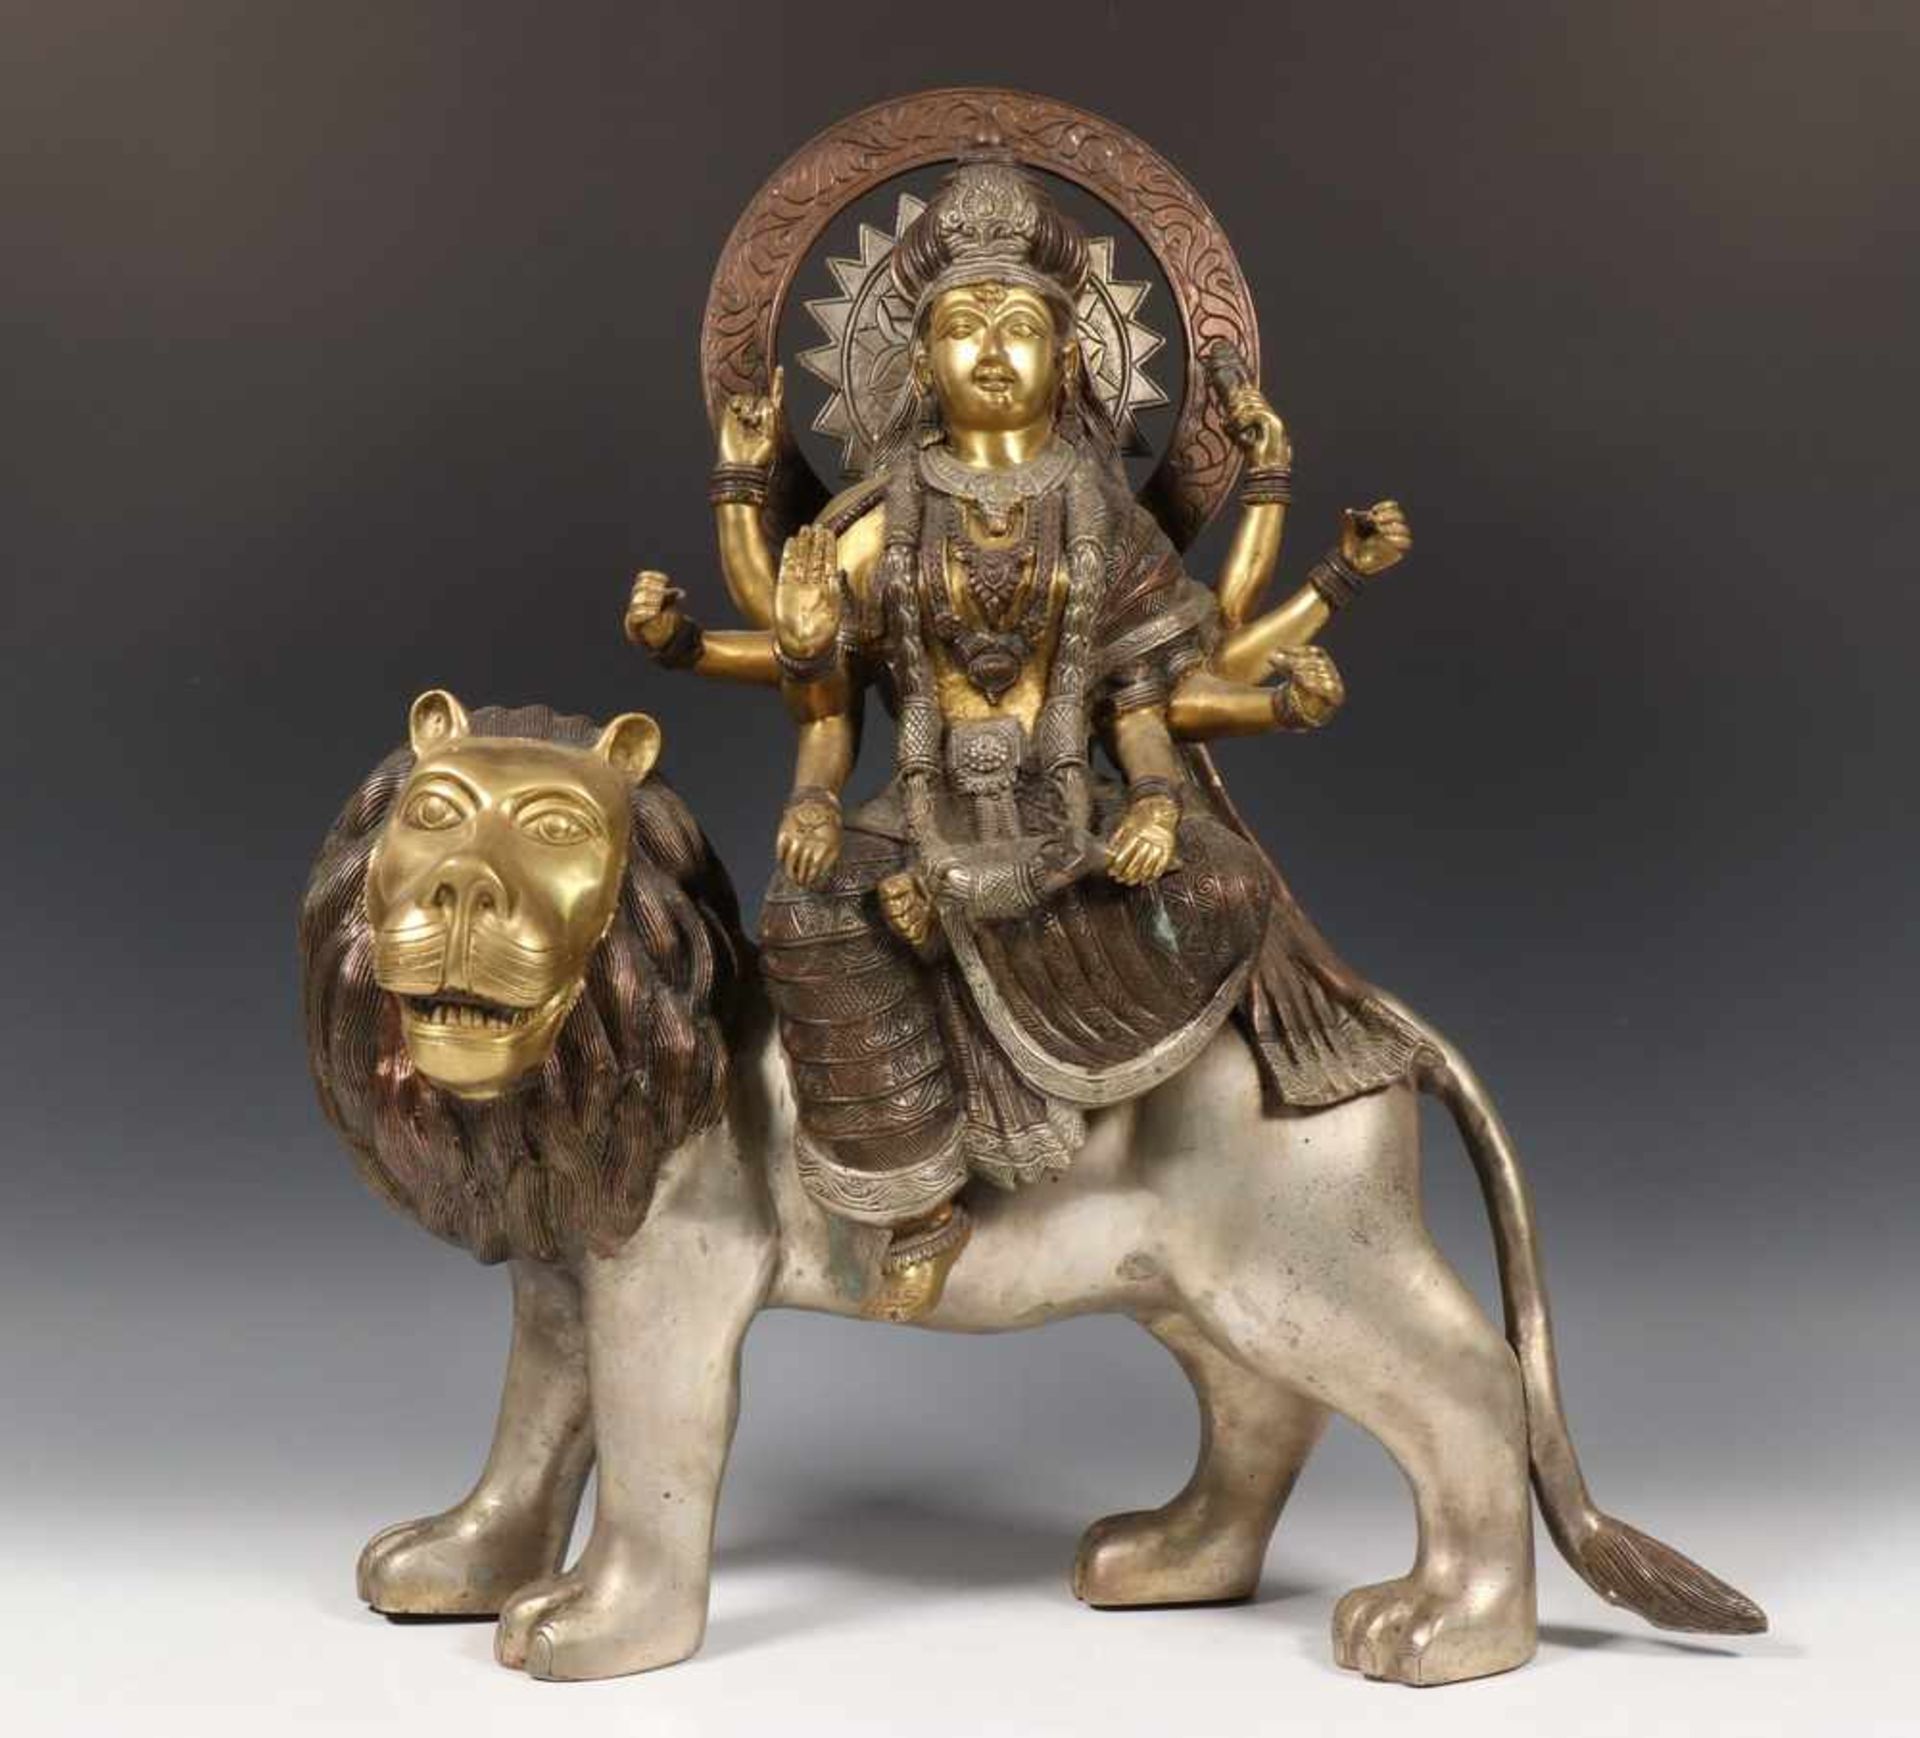 Bronzen sculptuur van Shiva op leeuwh. 55 cm.; [1]220